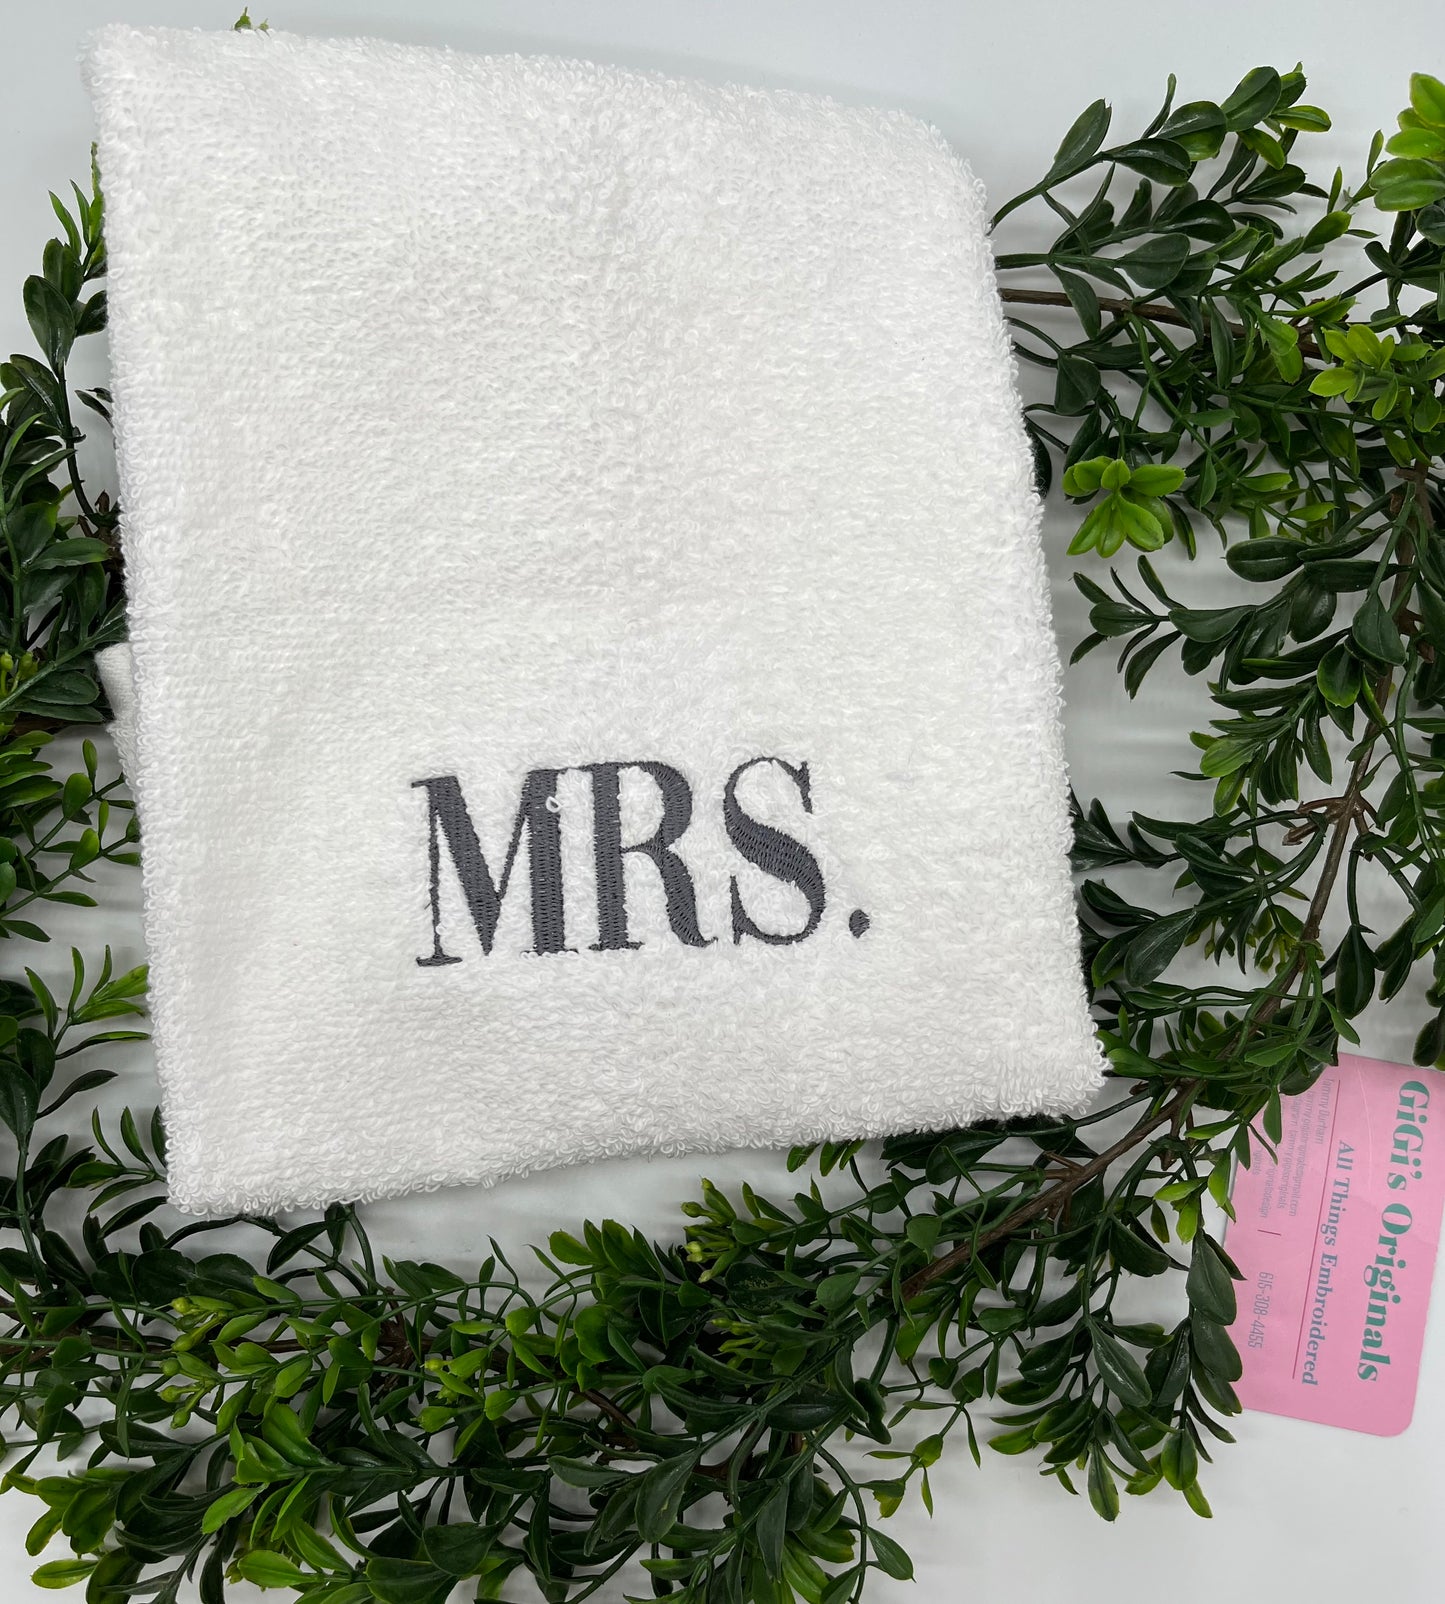 Mr. Mrs. Hand Towels